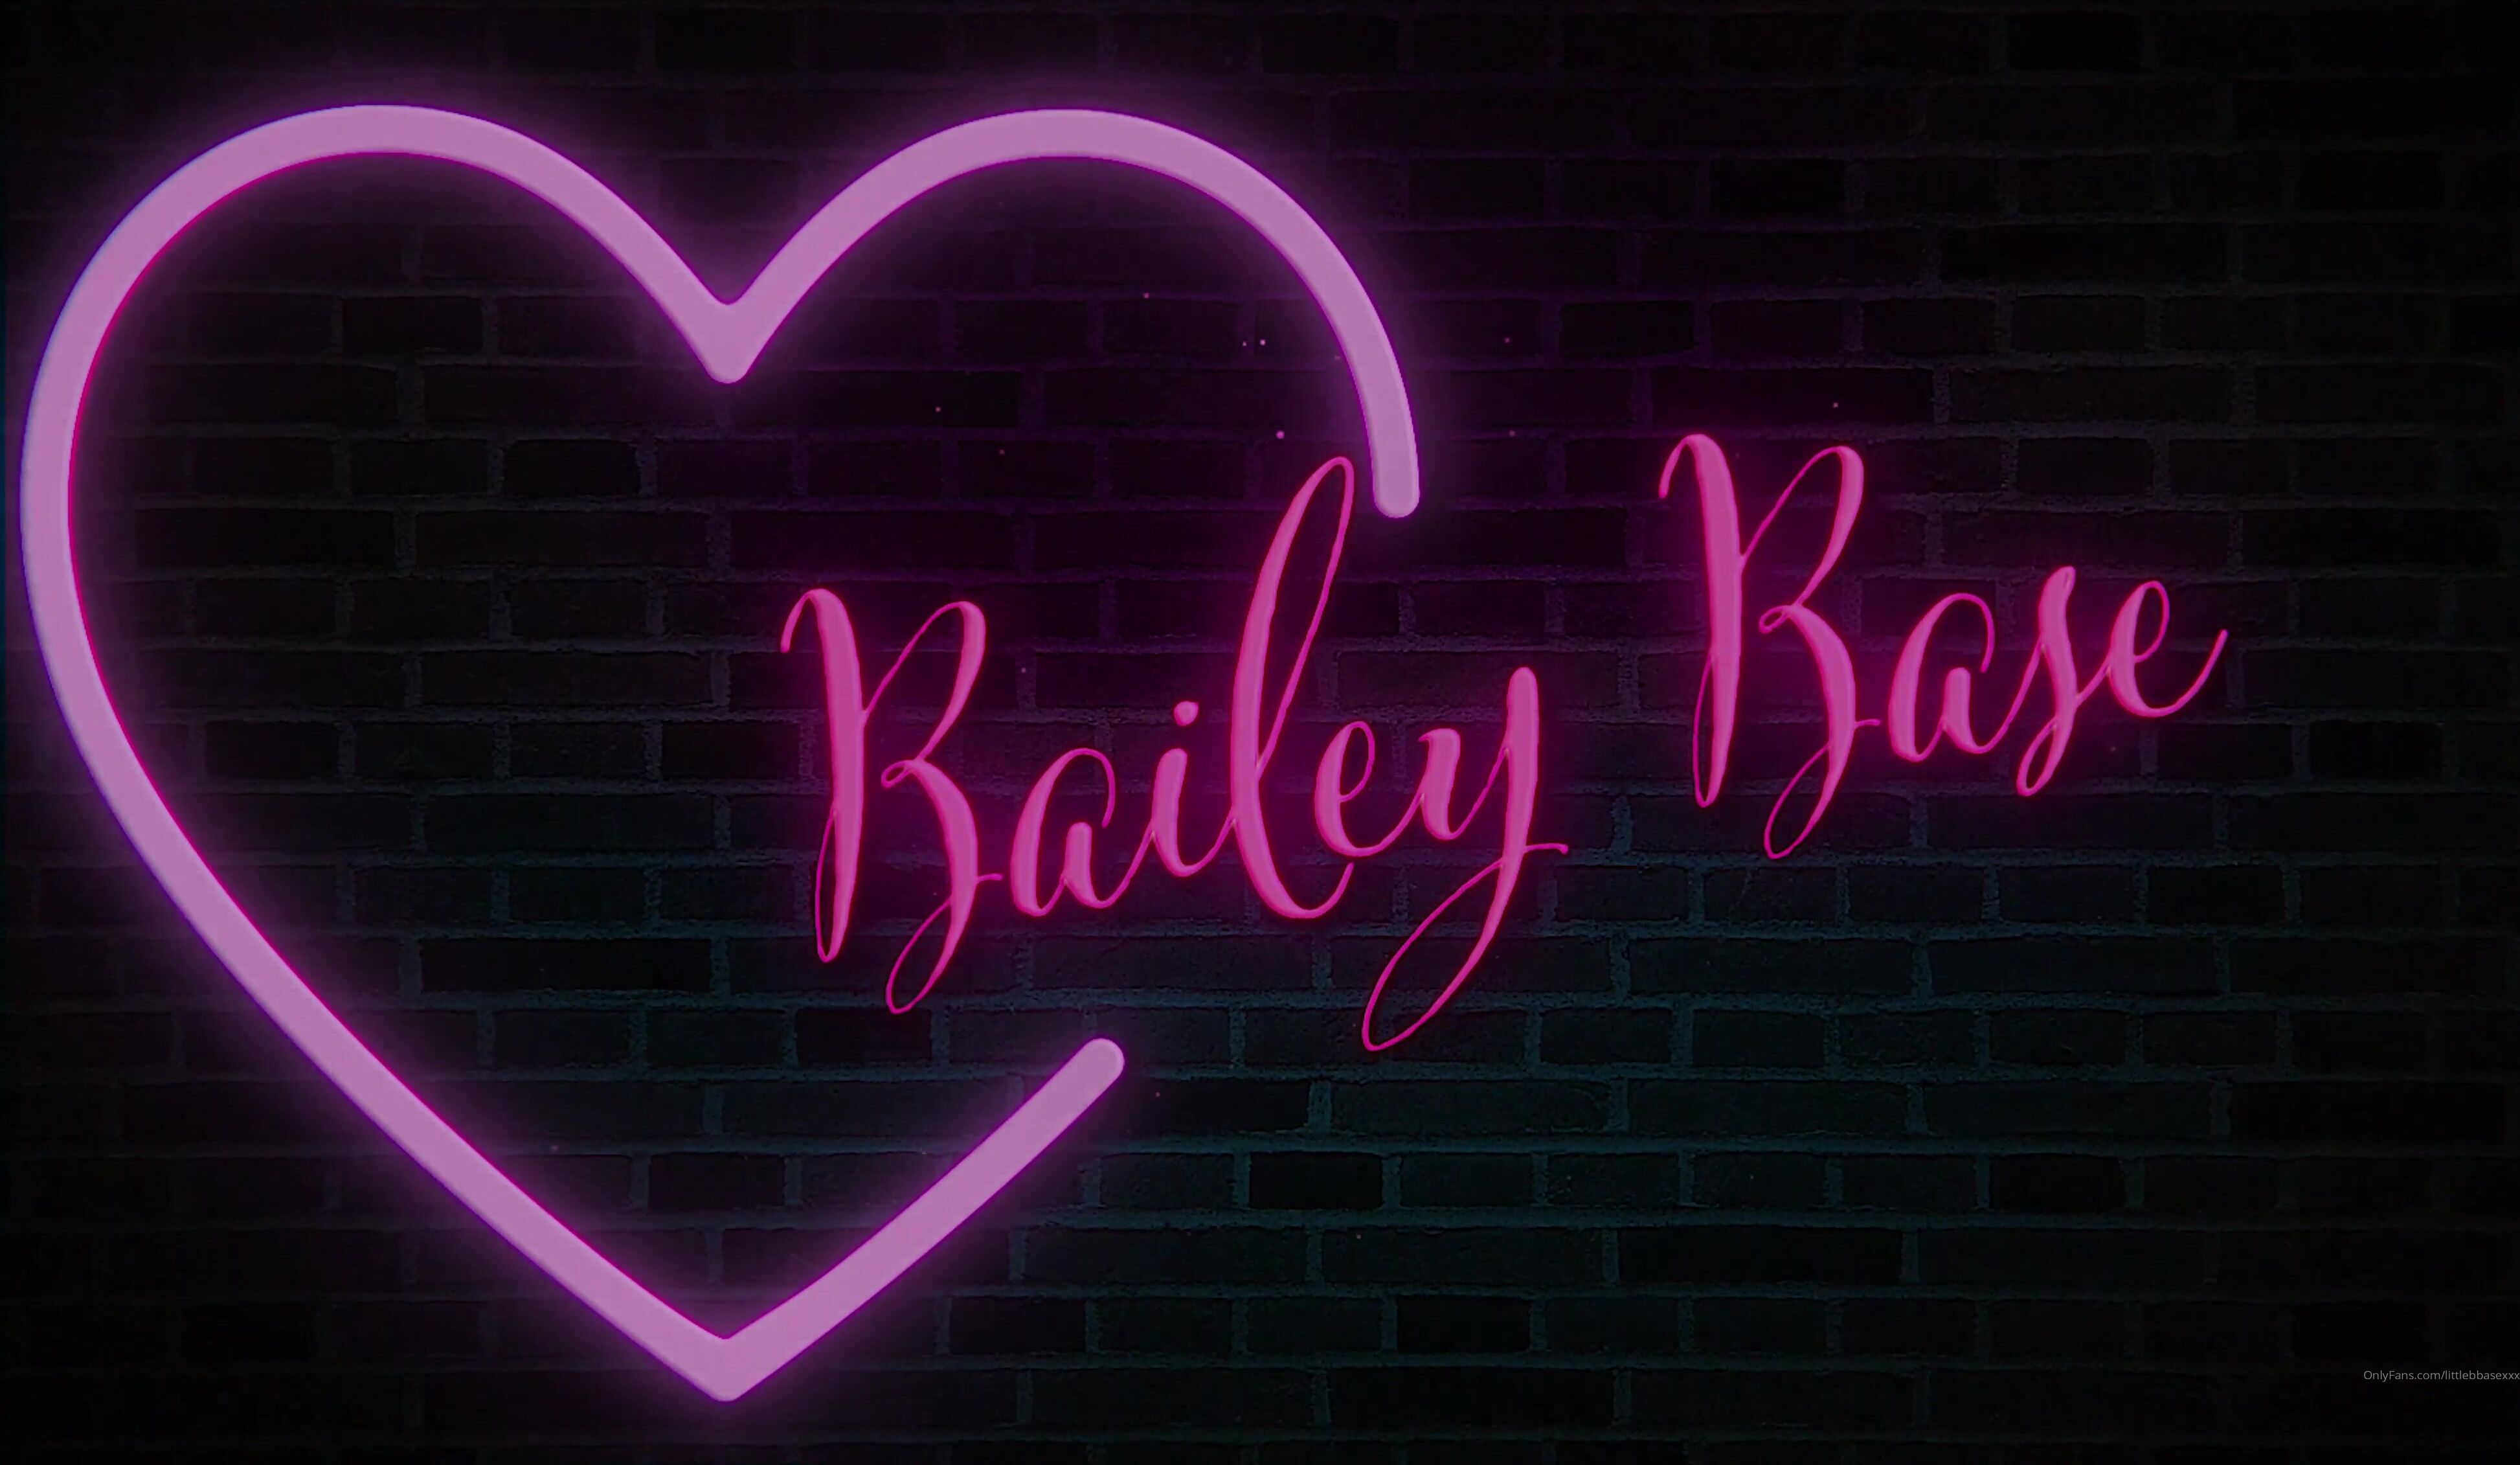 Bailey base onlyfans leak